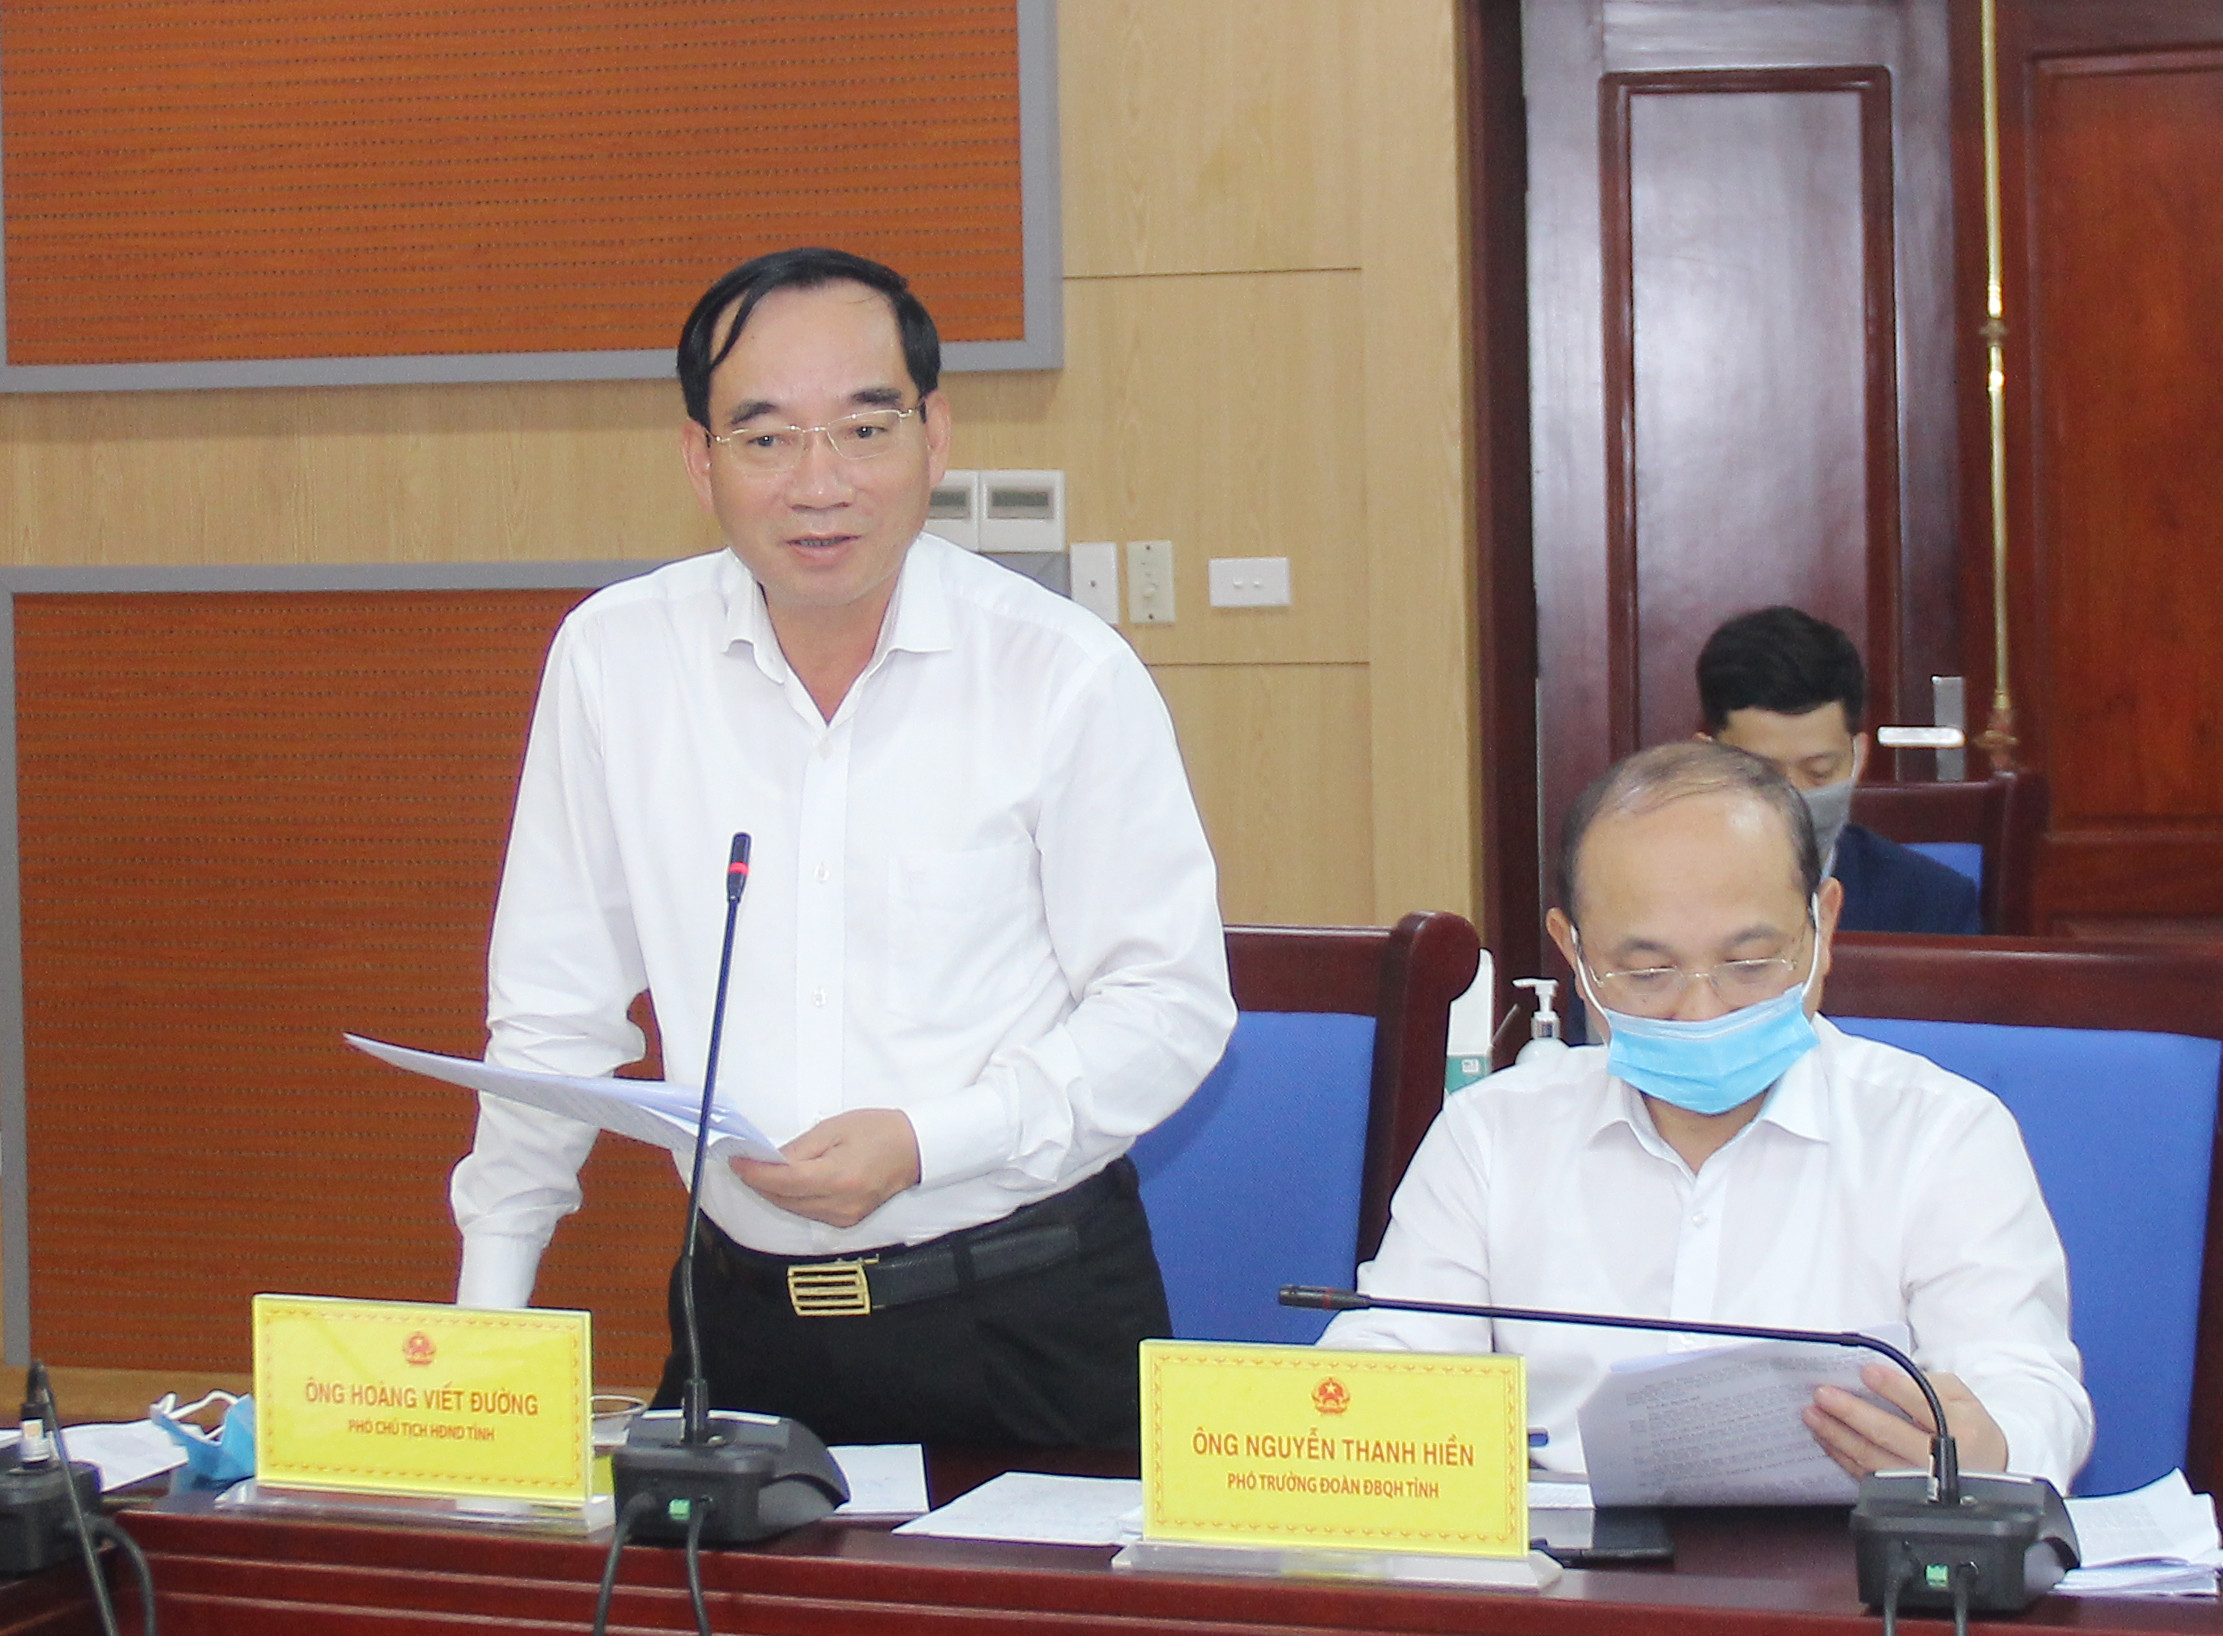 Đồng chí Hoàng Viết Đường - Phó Chủ tịch HĐND tỉnh đề nghị Sở Tài chính rà soát lại các đối tượng để đảm bảo bao quát được tất cả các hoạt động bầu cử để có cơ sở chi. Ảnh: Mai Hoa